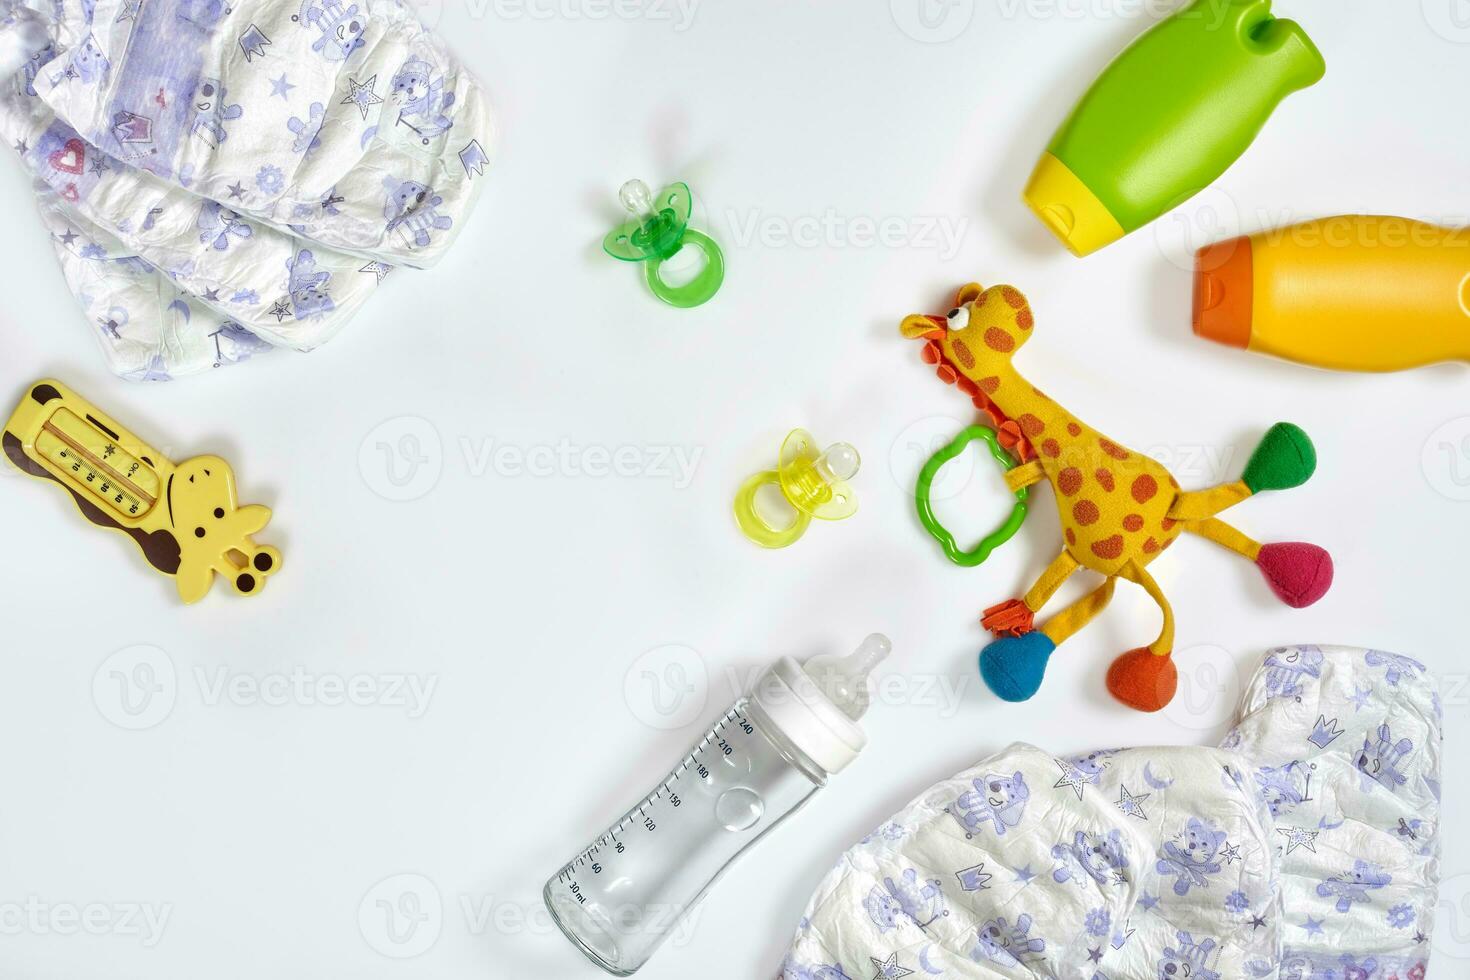 uppsättning av Tillbehör för bebis. napp, flaska, blöja, grädde på vit bakgrund. foto